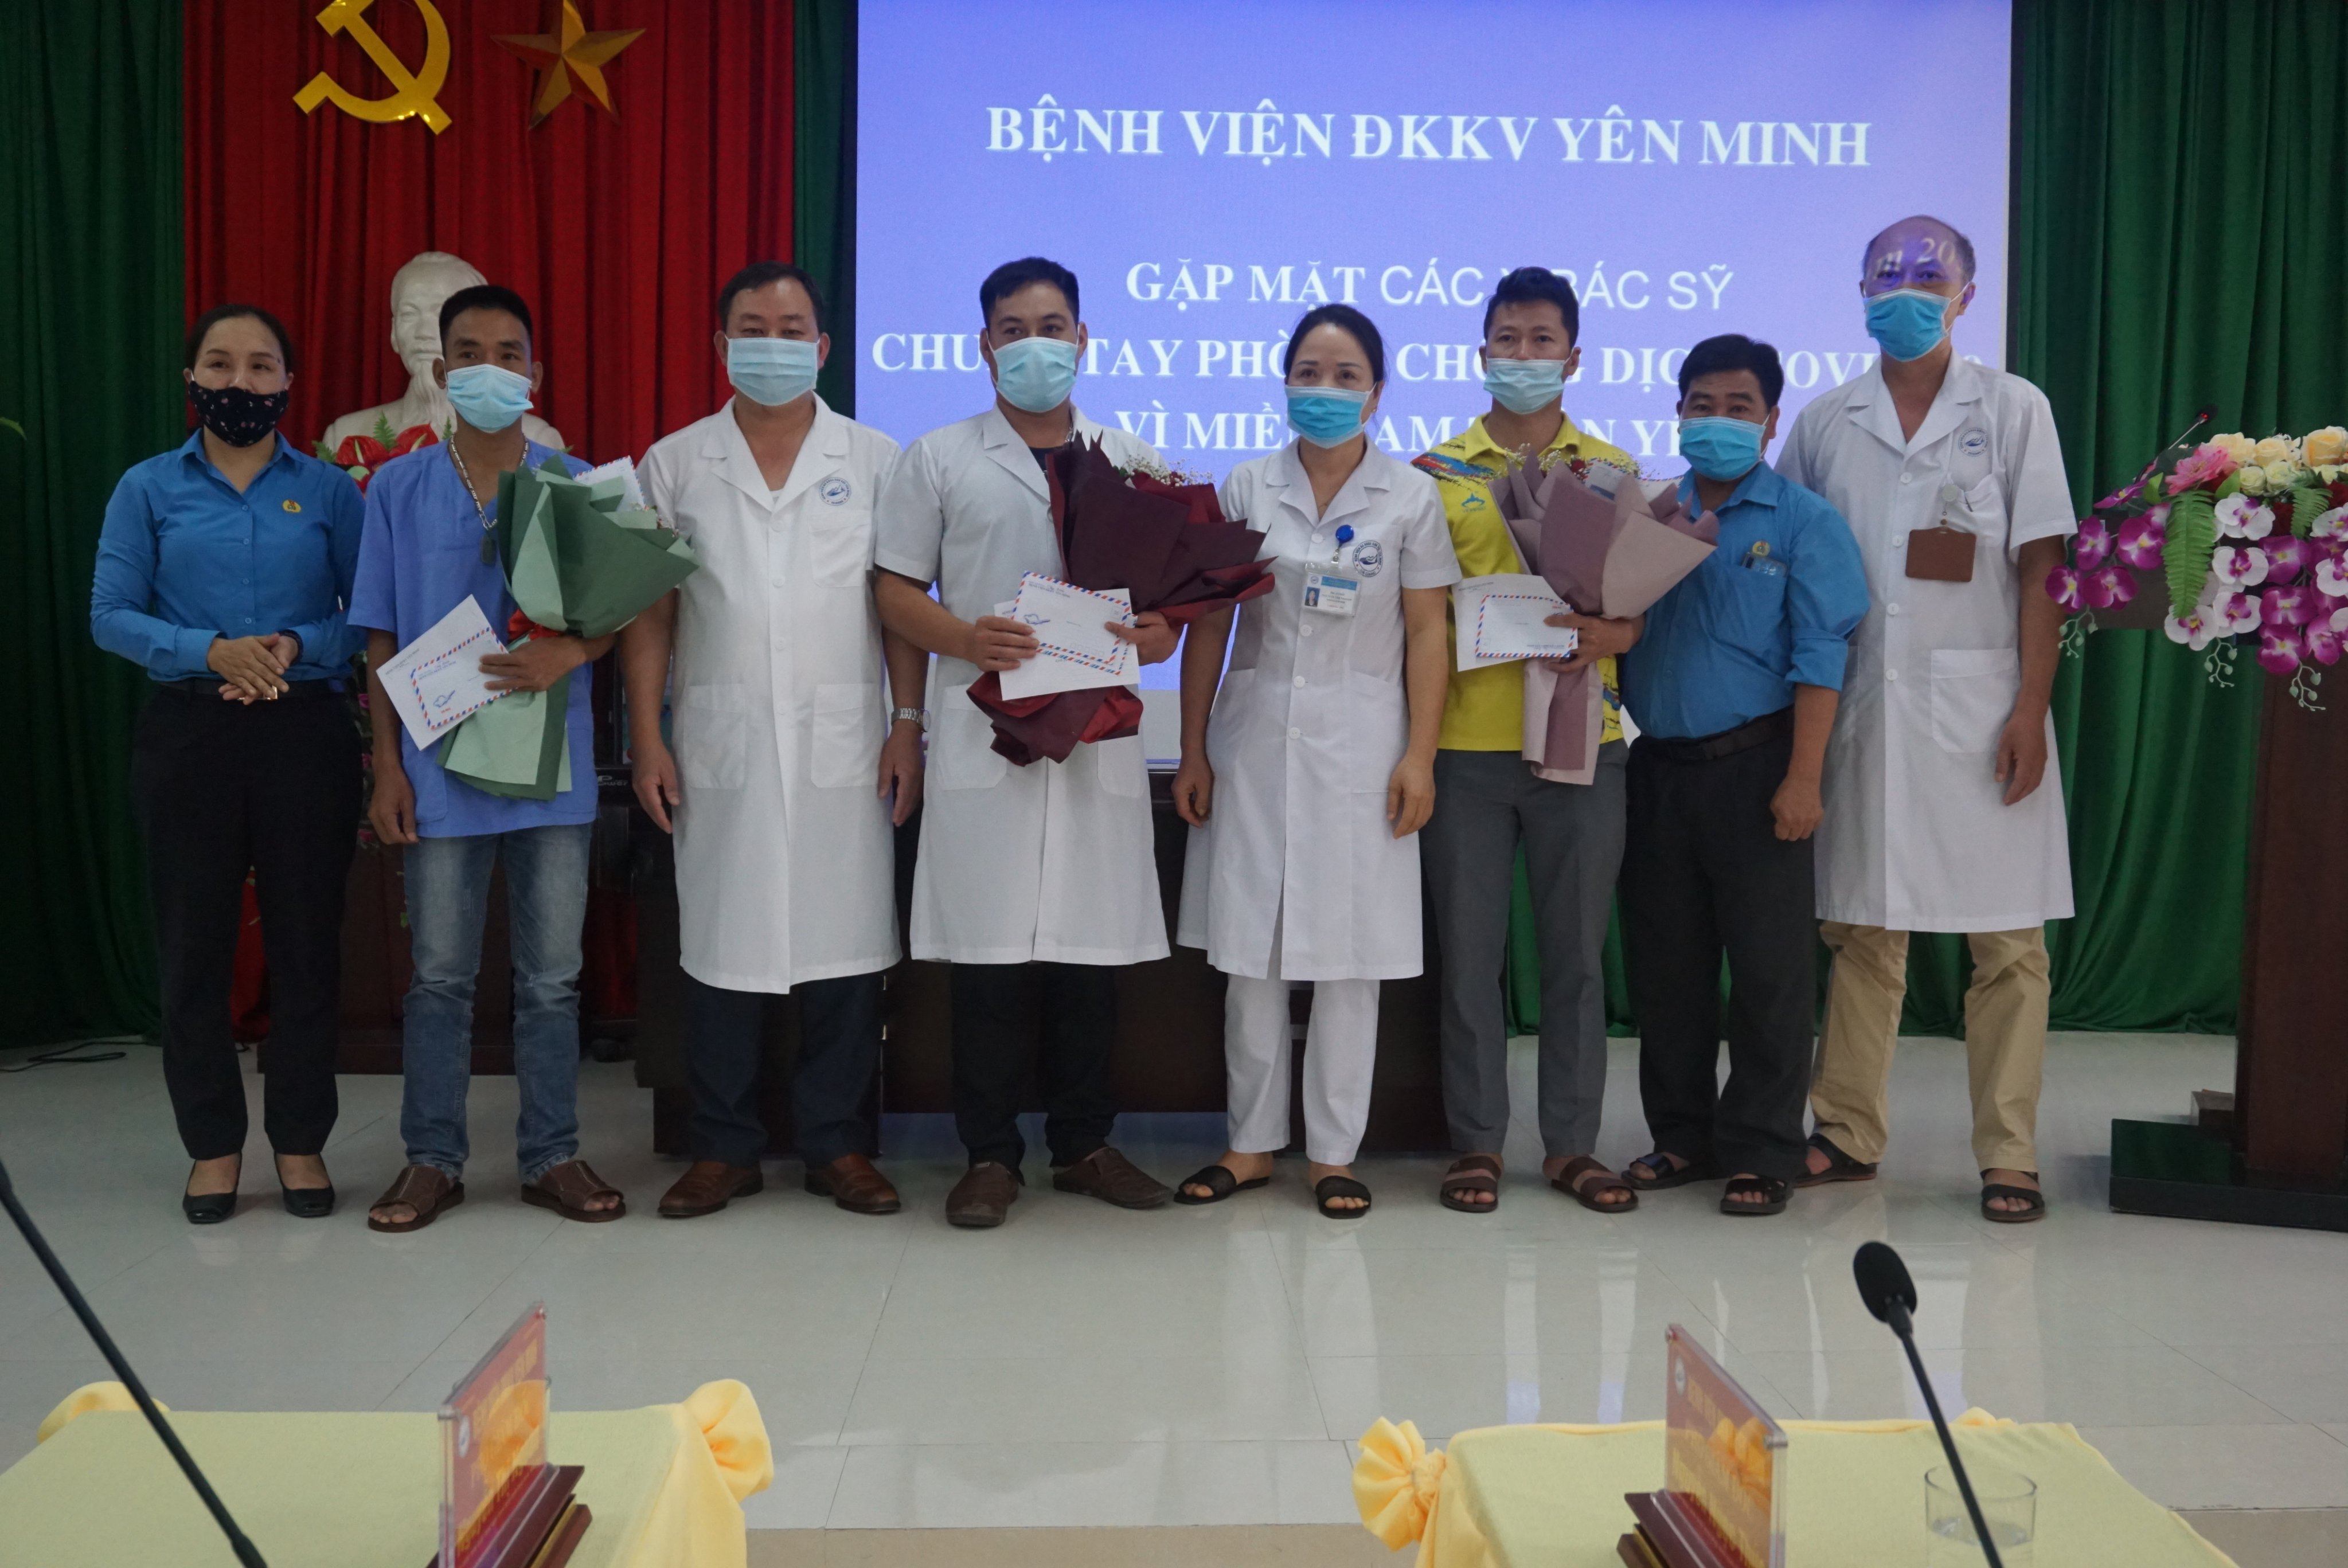 Bệnh viện ĐKKV Yên Minh tổ chức gặp mặt đoàn cán bộ y tế của bệnh viện tham gia hỗ trợ phòng chống dịch COVID-19 tại Bình Dương